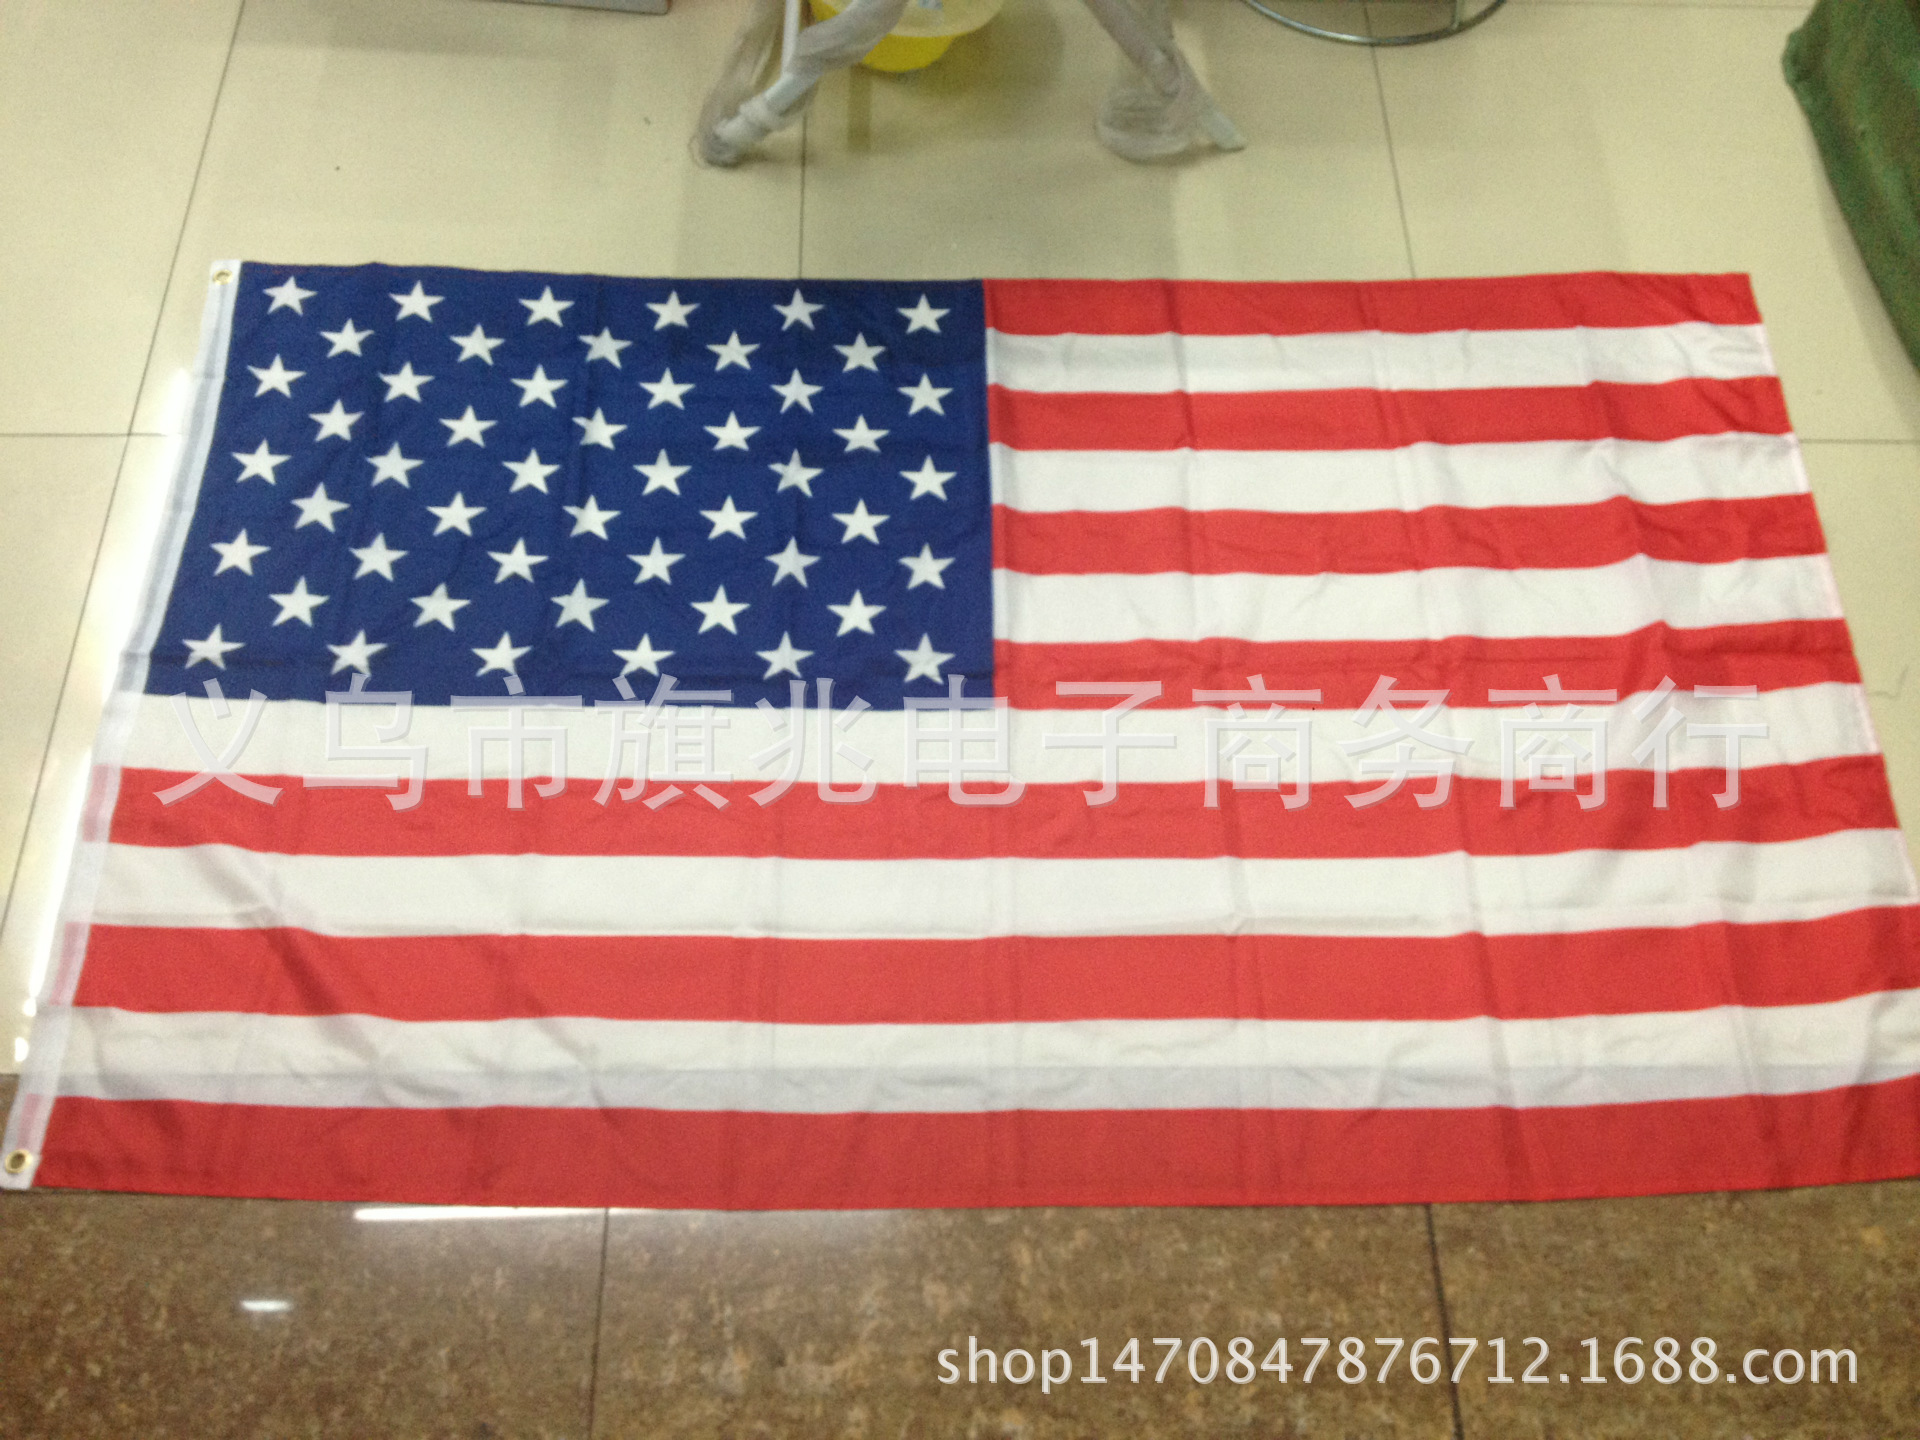 美国国旗 美国星条旗 生产与销售 厂家直销图